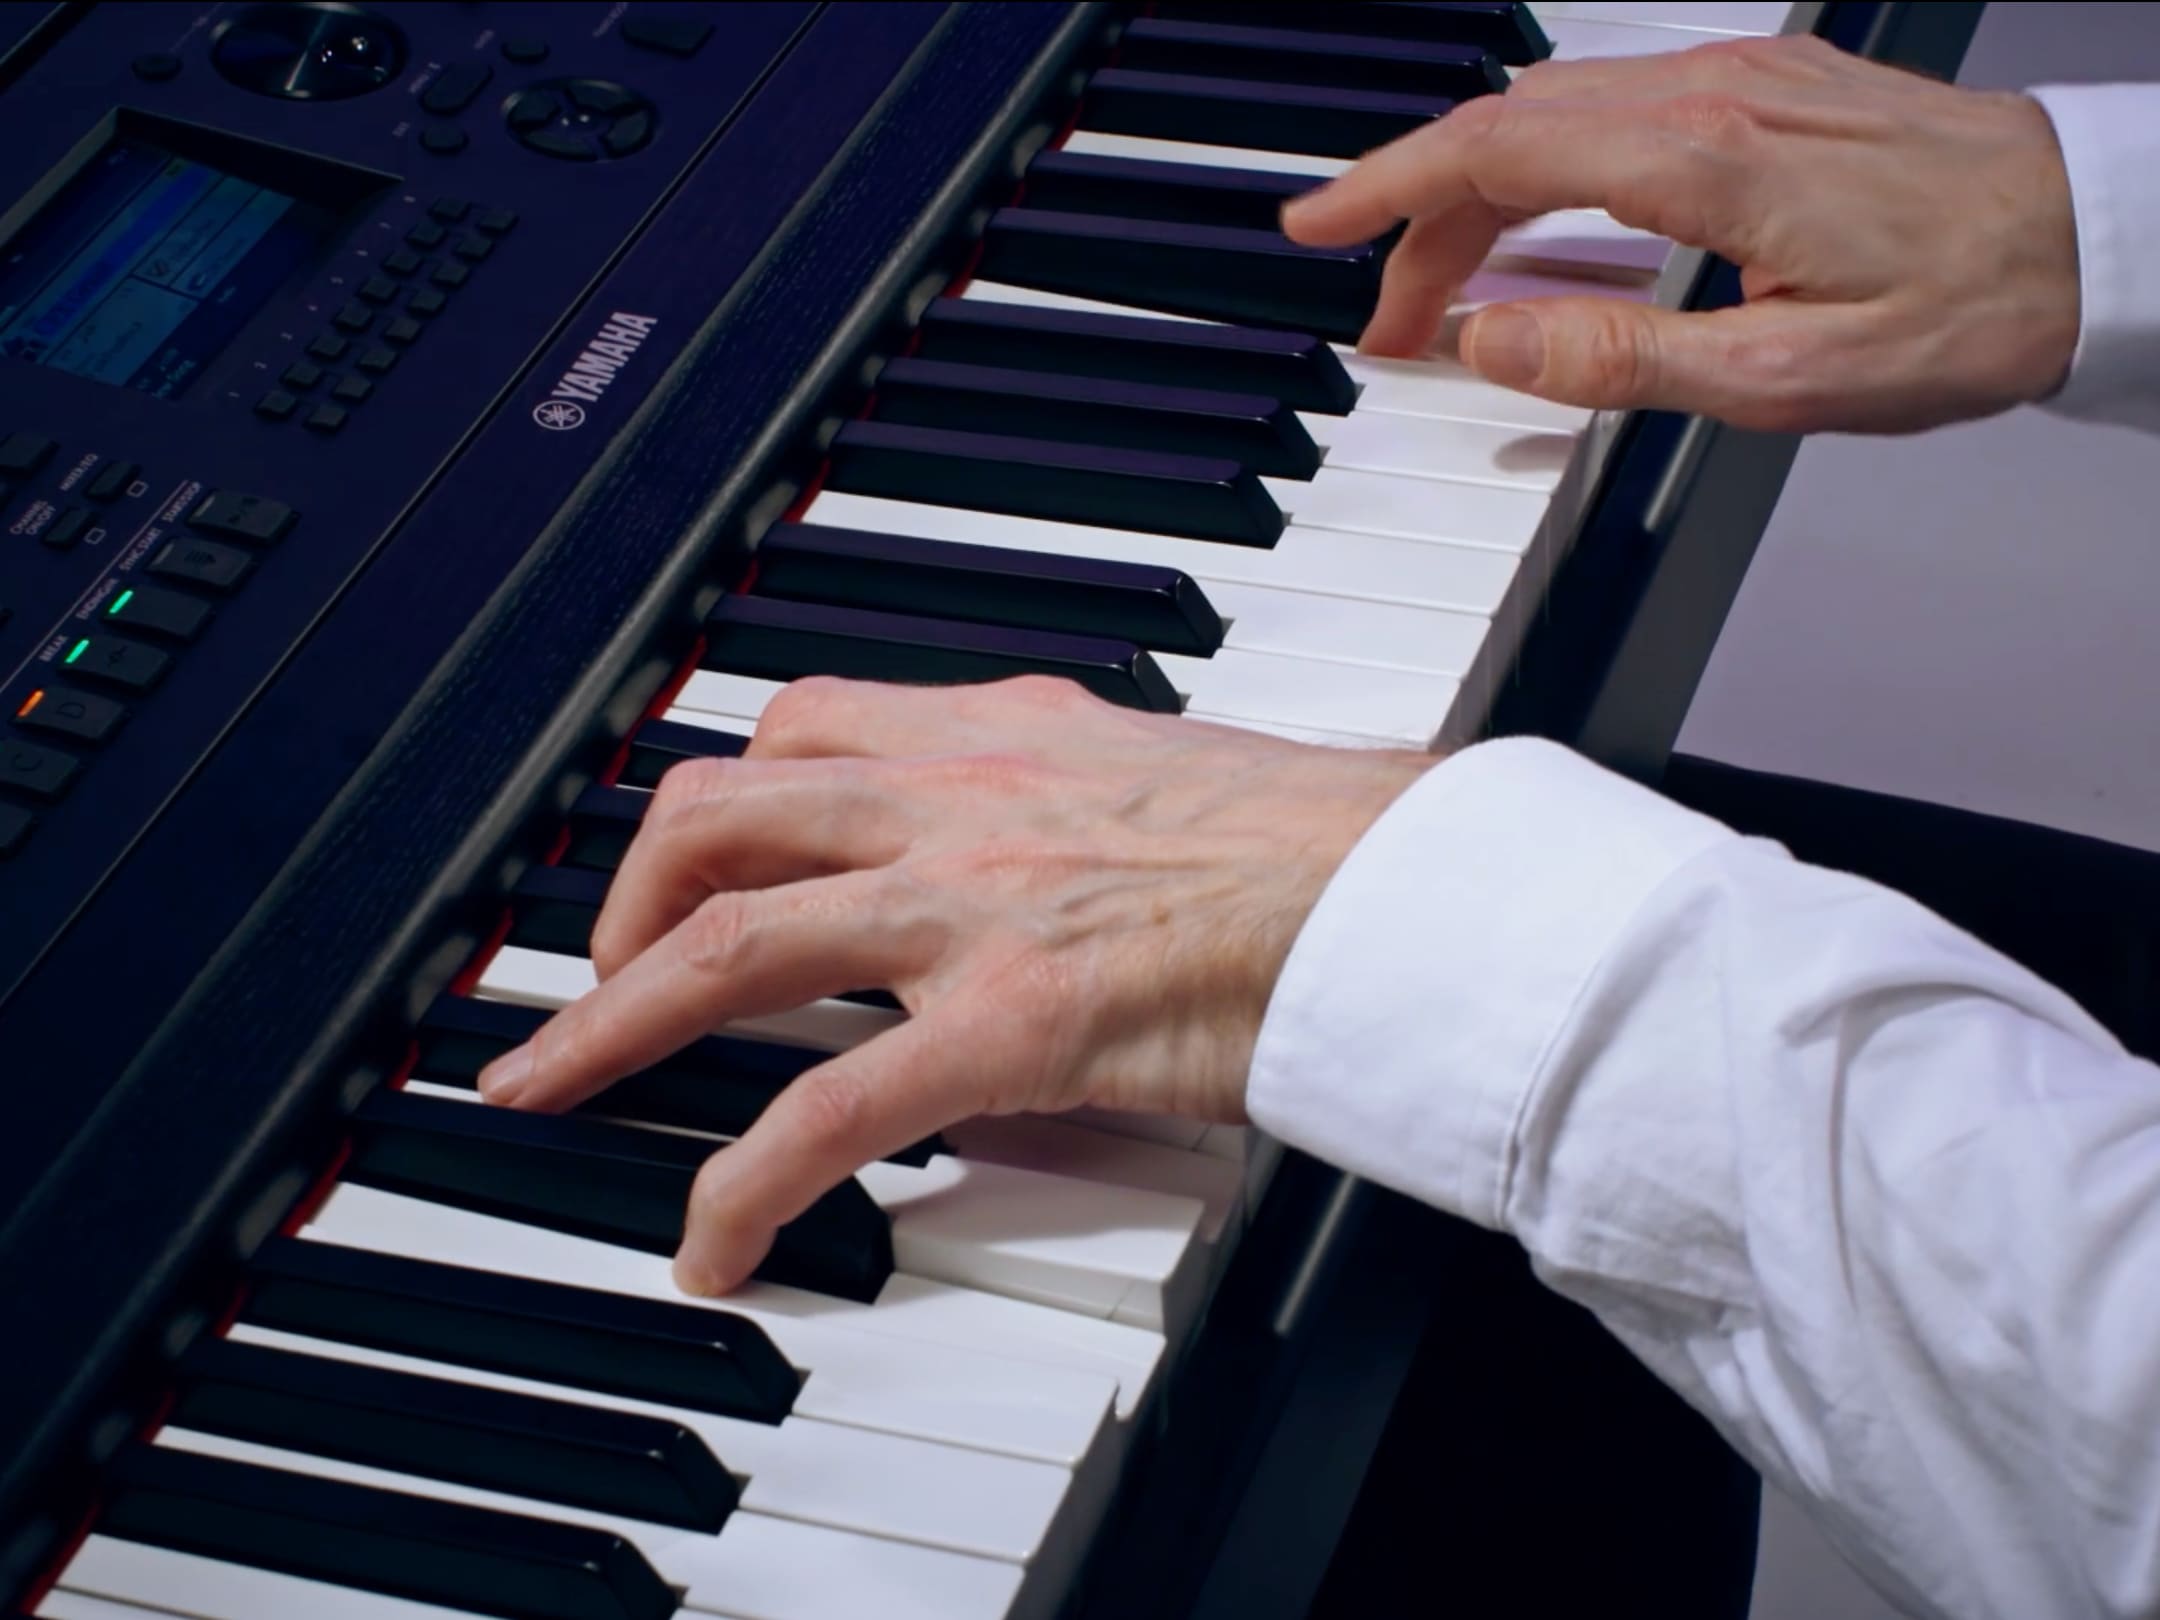 GHS Piano action of the Yamaha DGX670 digital piano